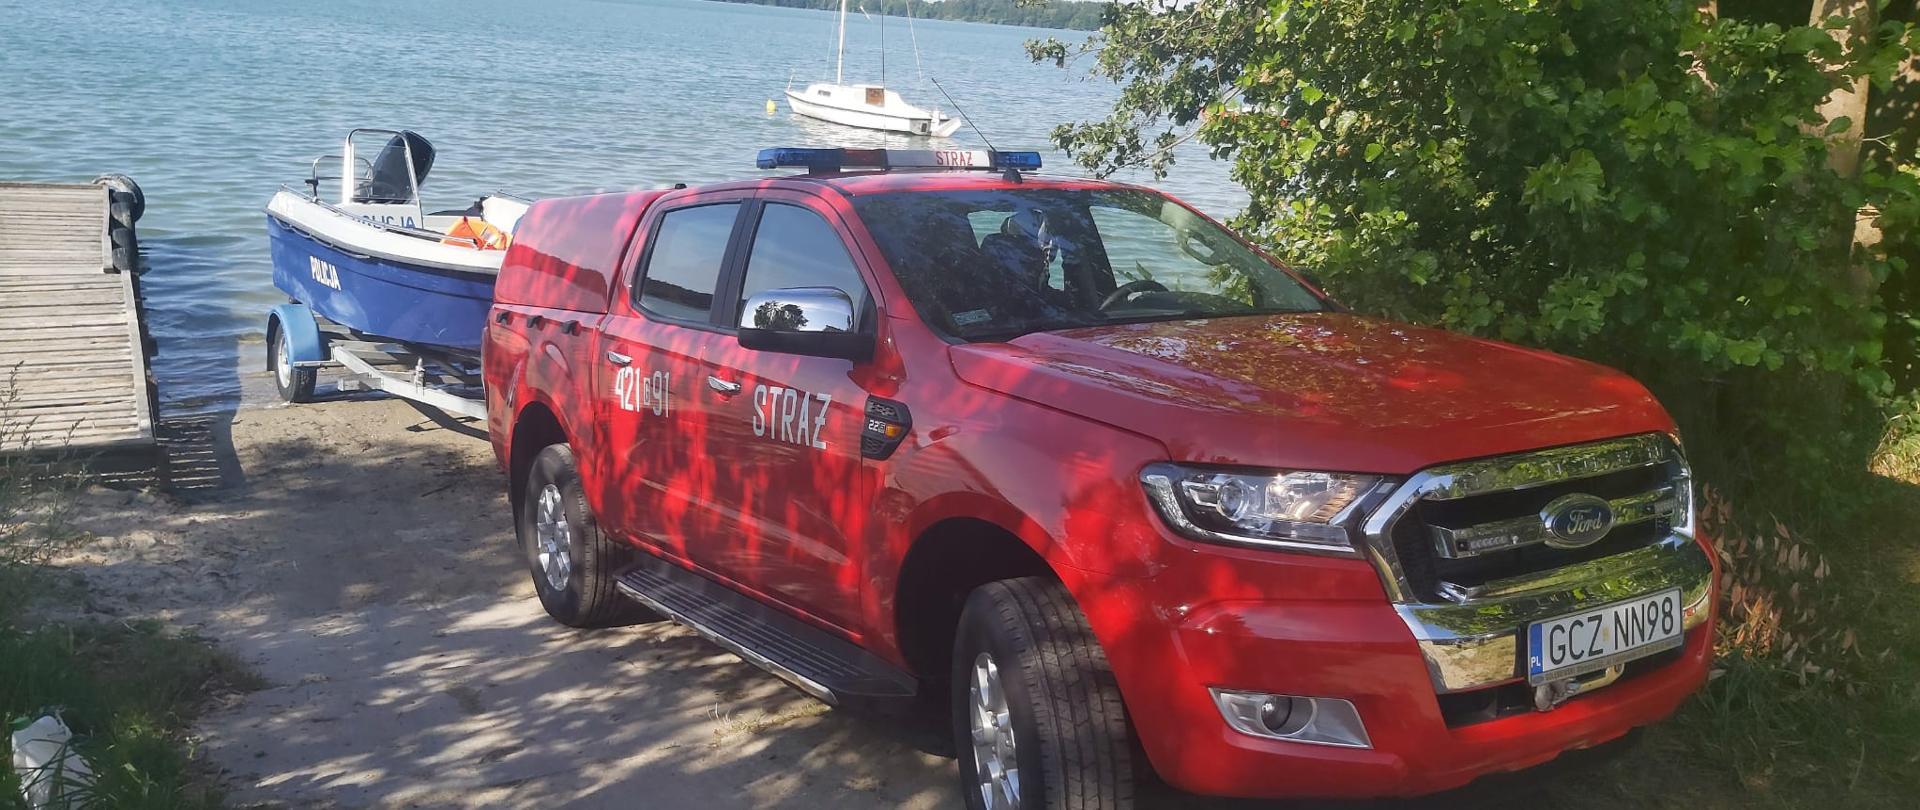 Na miejscu wodowania nad jeziorem Rychnowskim stoi strażacki samochód operacyjny Ford Ranger, który woduje policyjną łódź motorową.